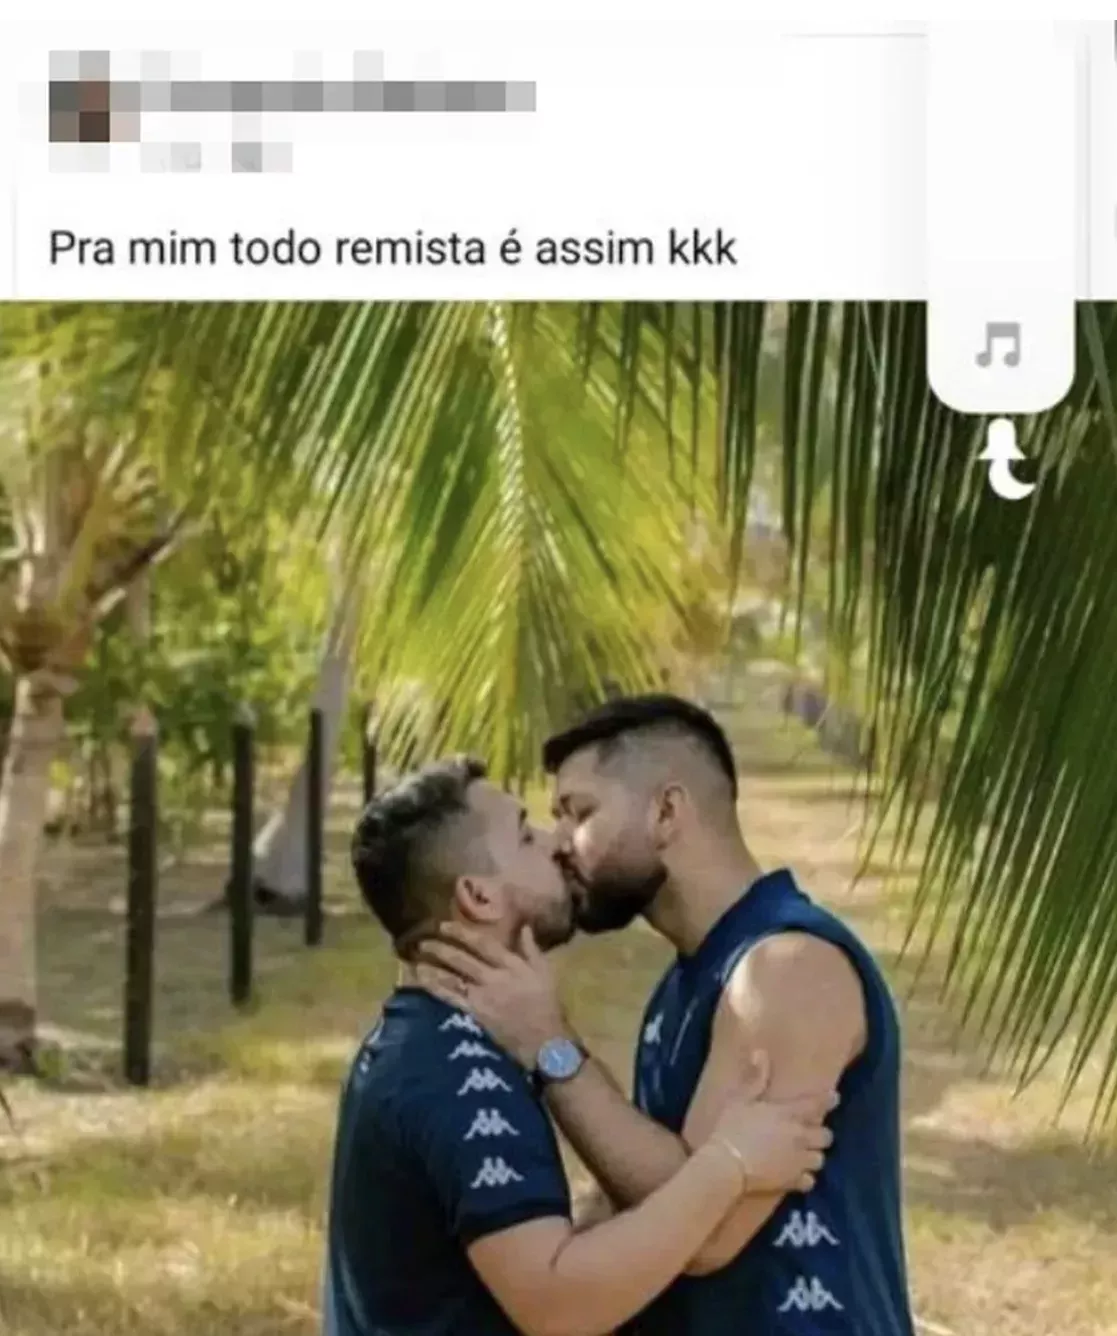 Una pareja es objeto de homofobia tras un reportaje fotográfico con una camiseta de Remo